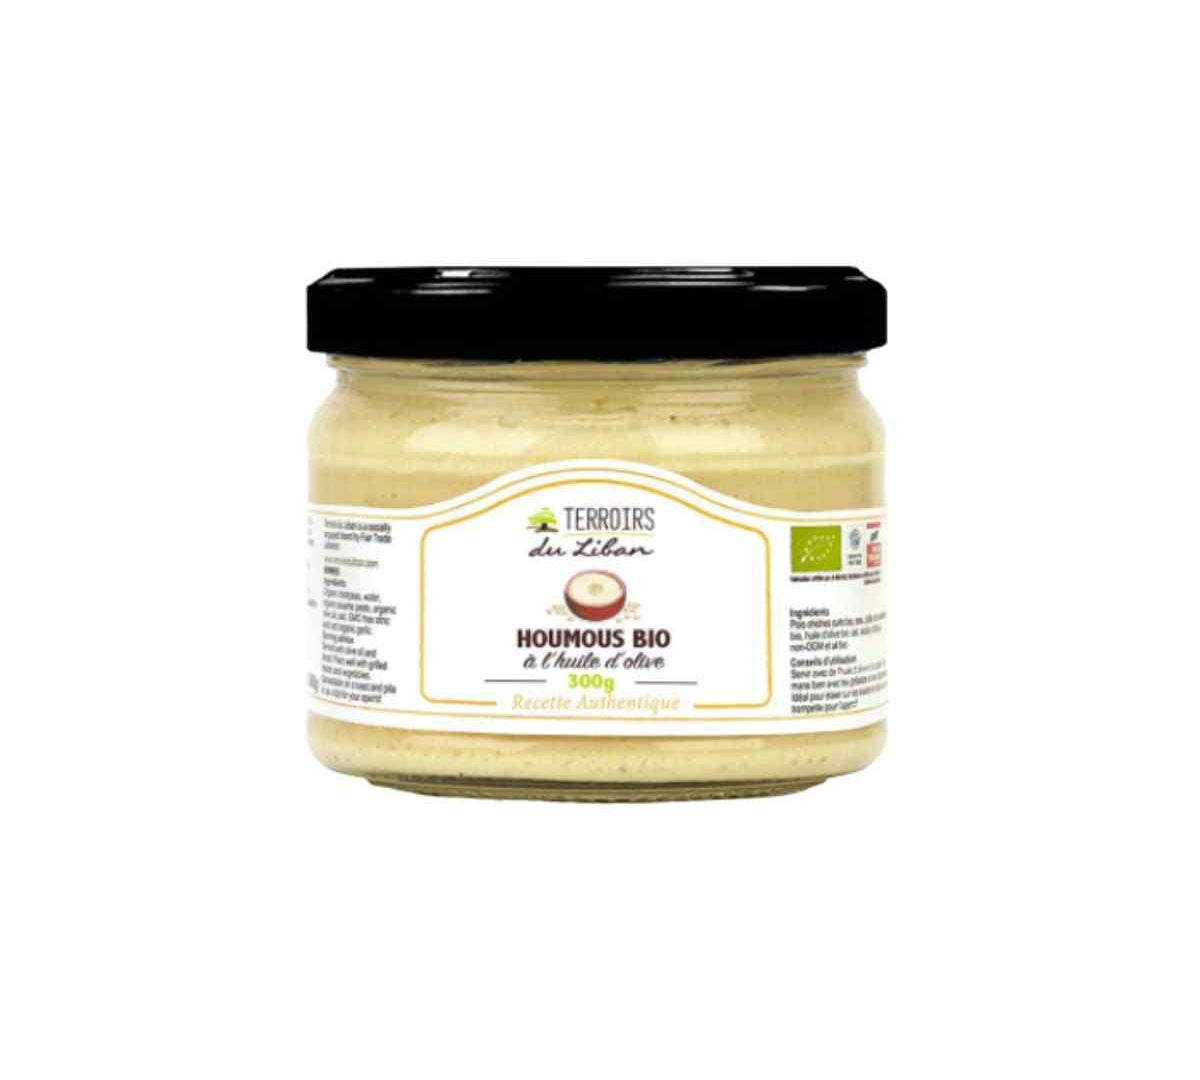 houlous bio à l'huile d'olive BIO Terroirs du Liban